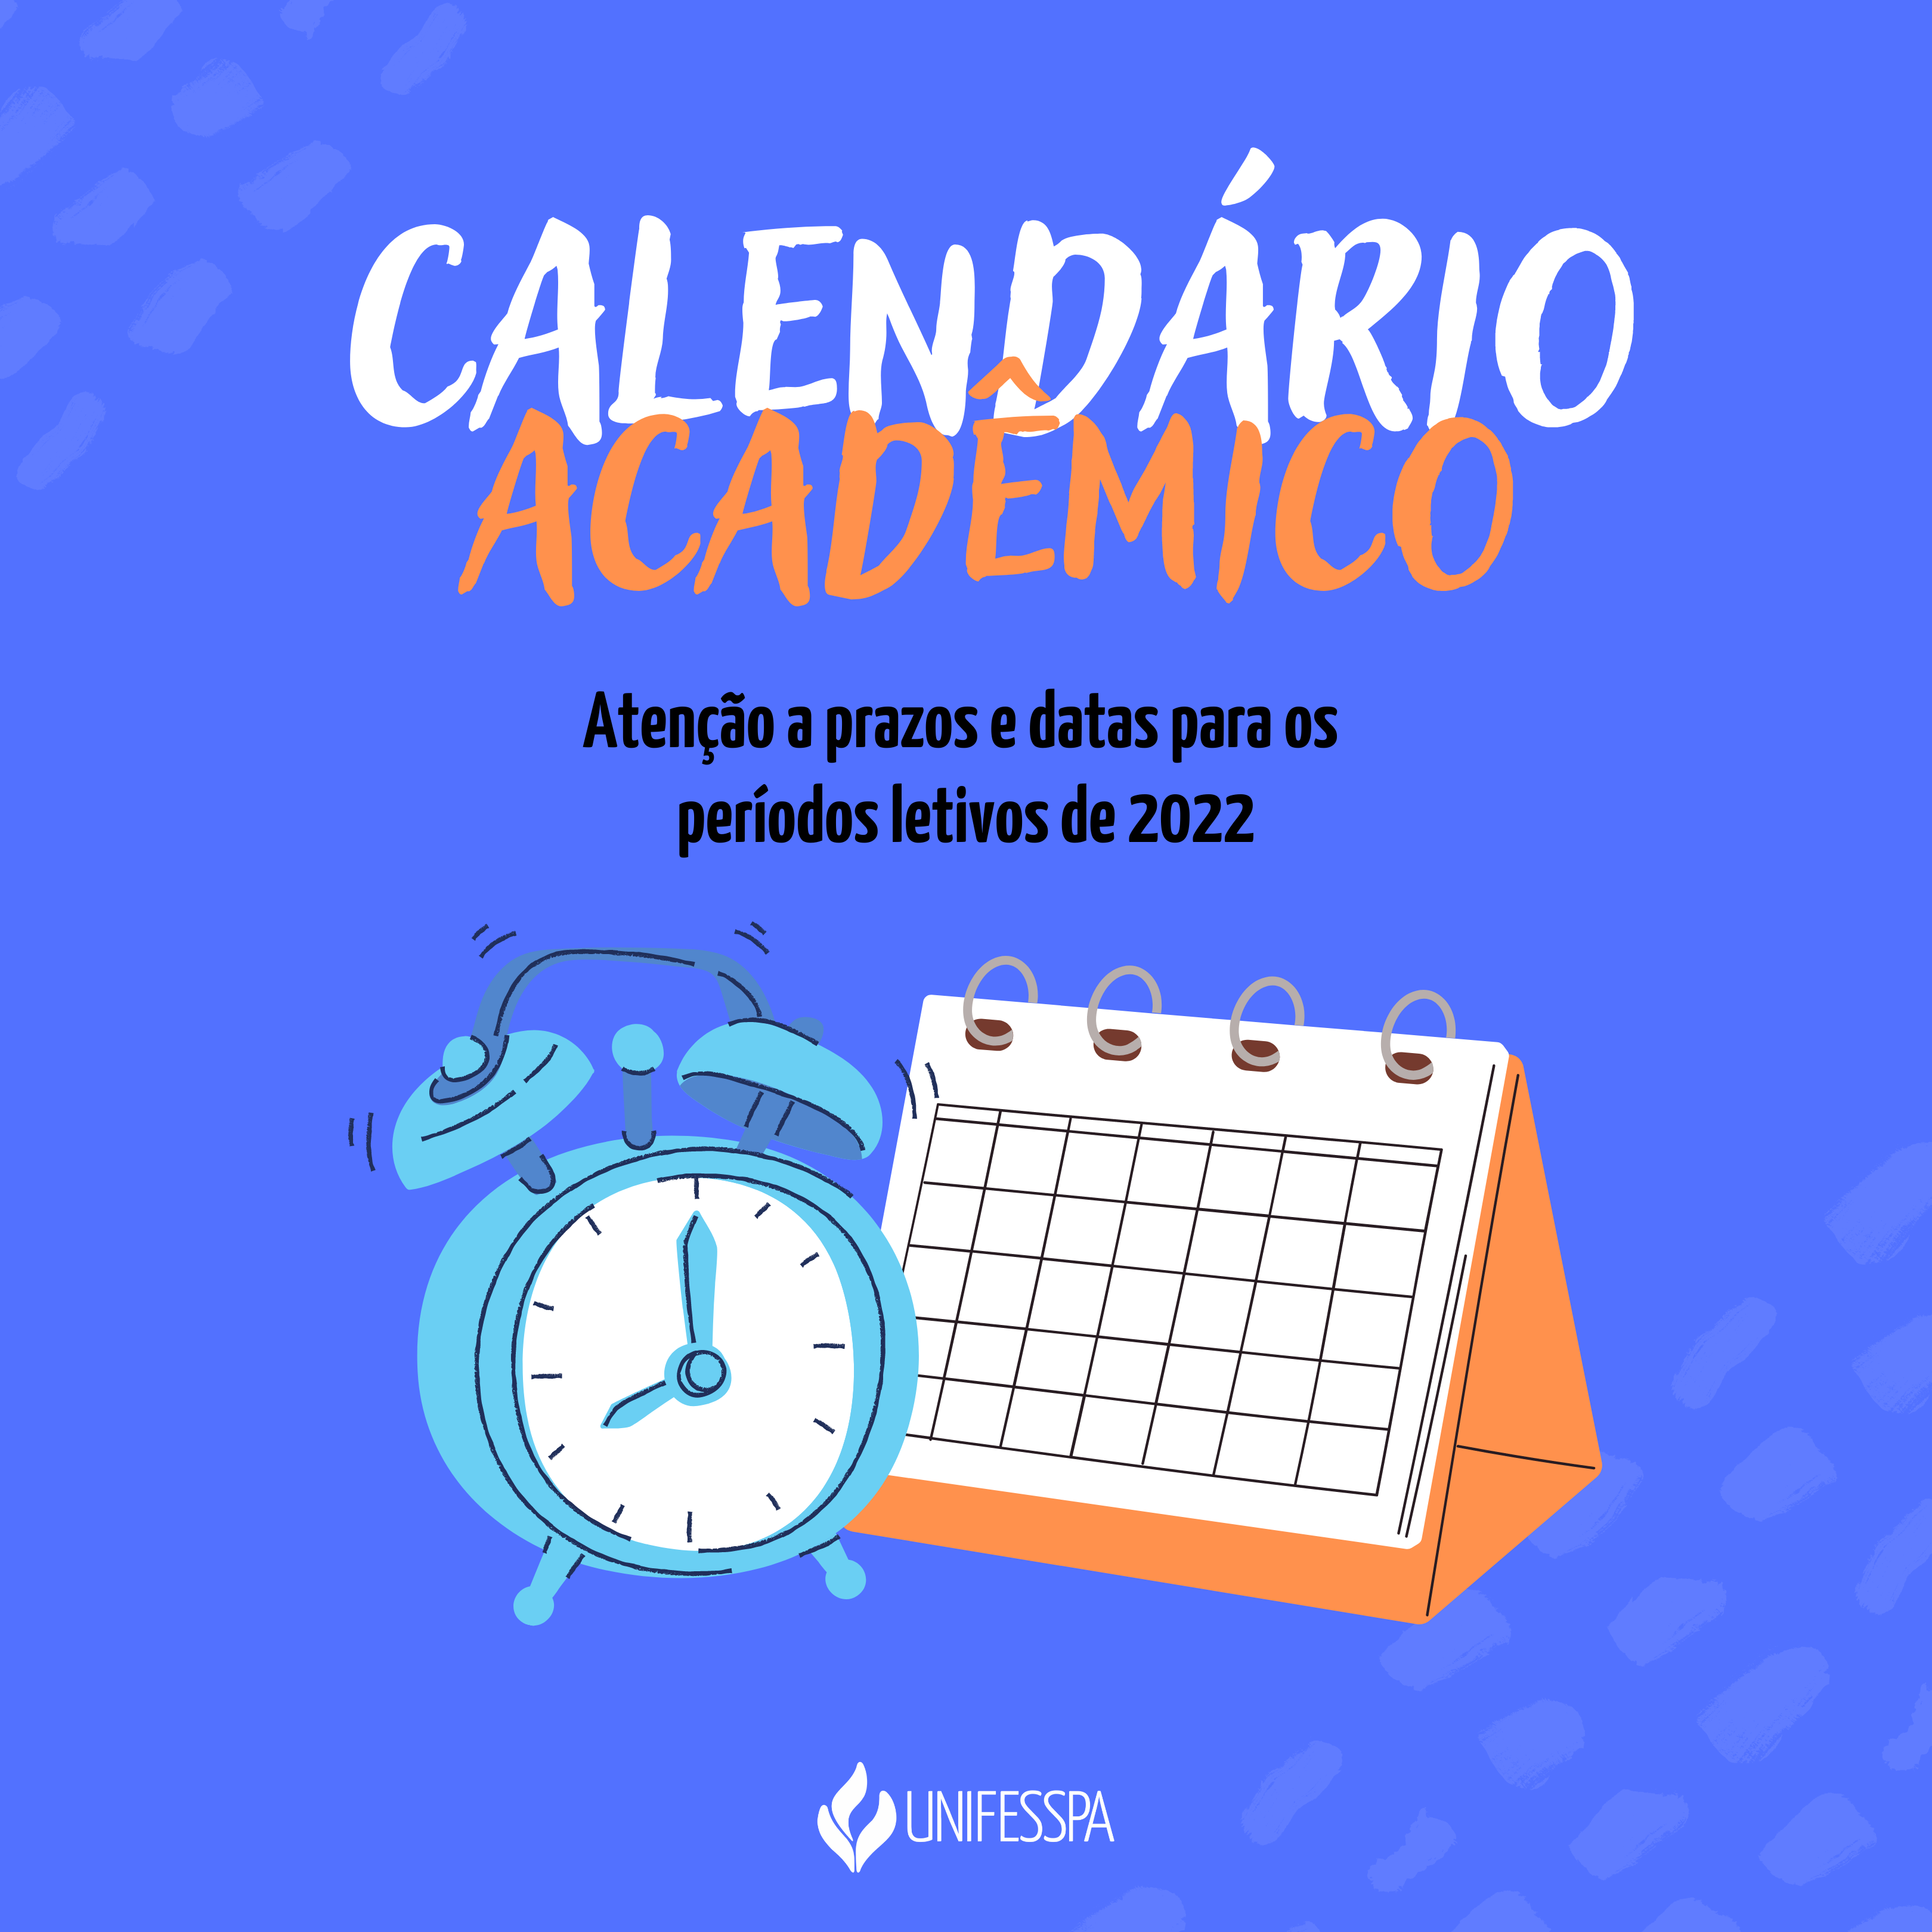 Calendario academico 2022